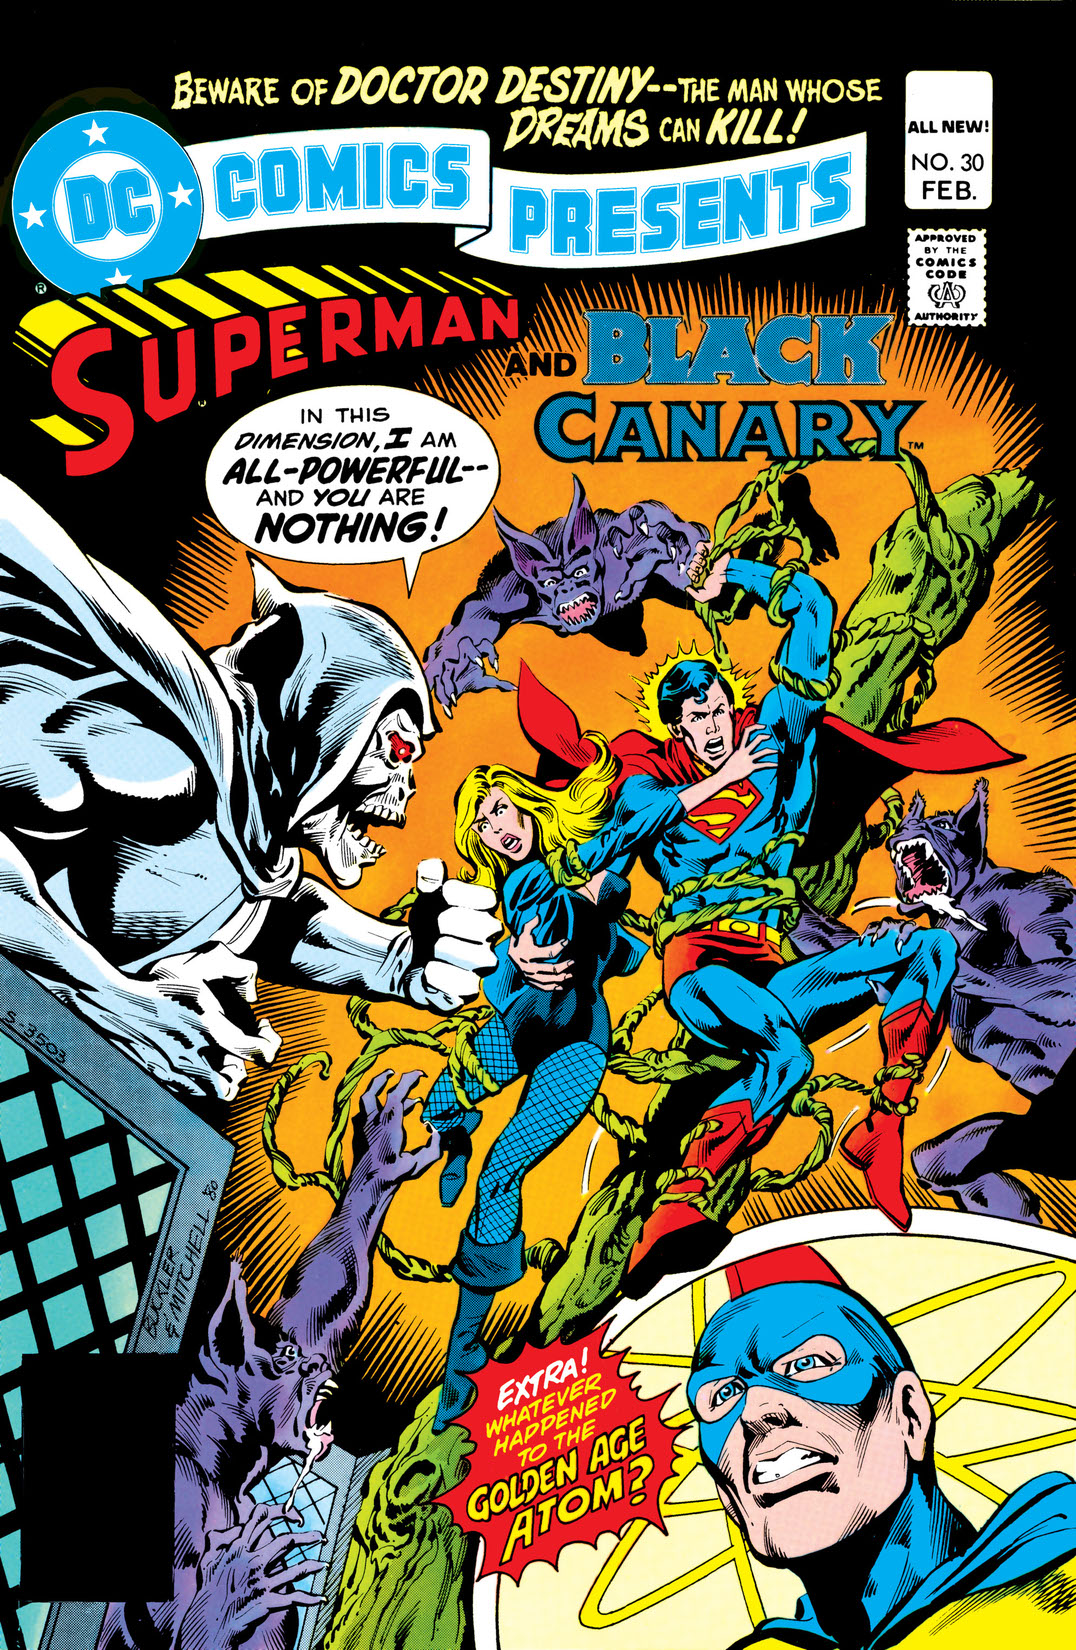 DC Comics Presents (1978-) #30 preview images